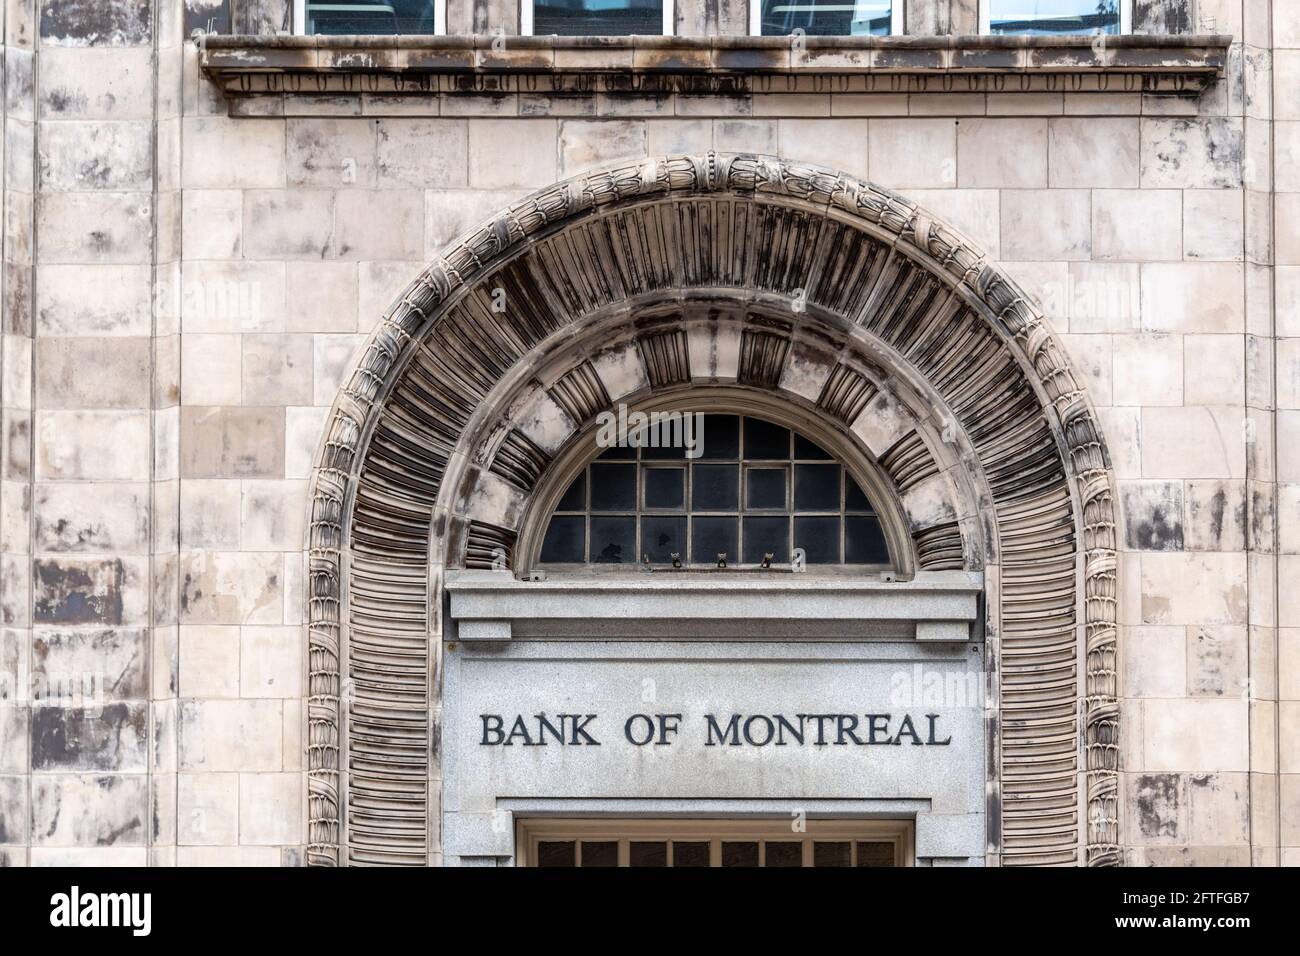 Détail architectural d'un vieux bâtiment en pierre avec le panneau « Banque de Montréal » vu dans la rue Yonge, dans le quartier du centre-ville de Toronto, Canada Banque D'Images